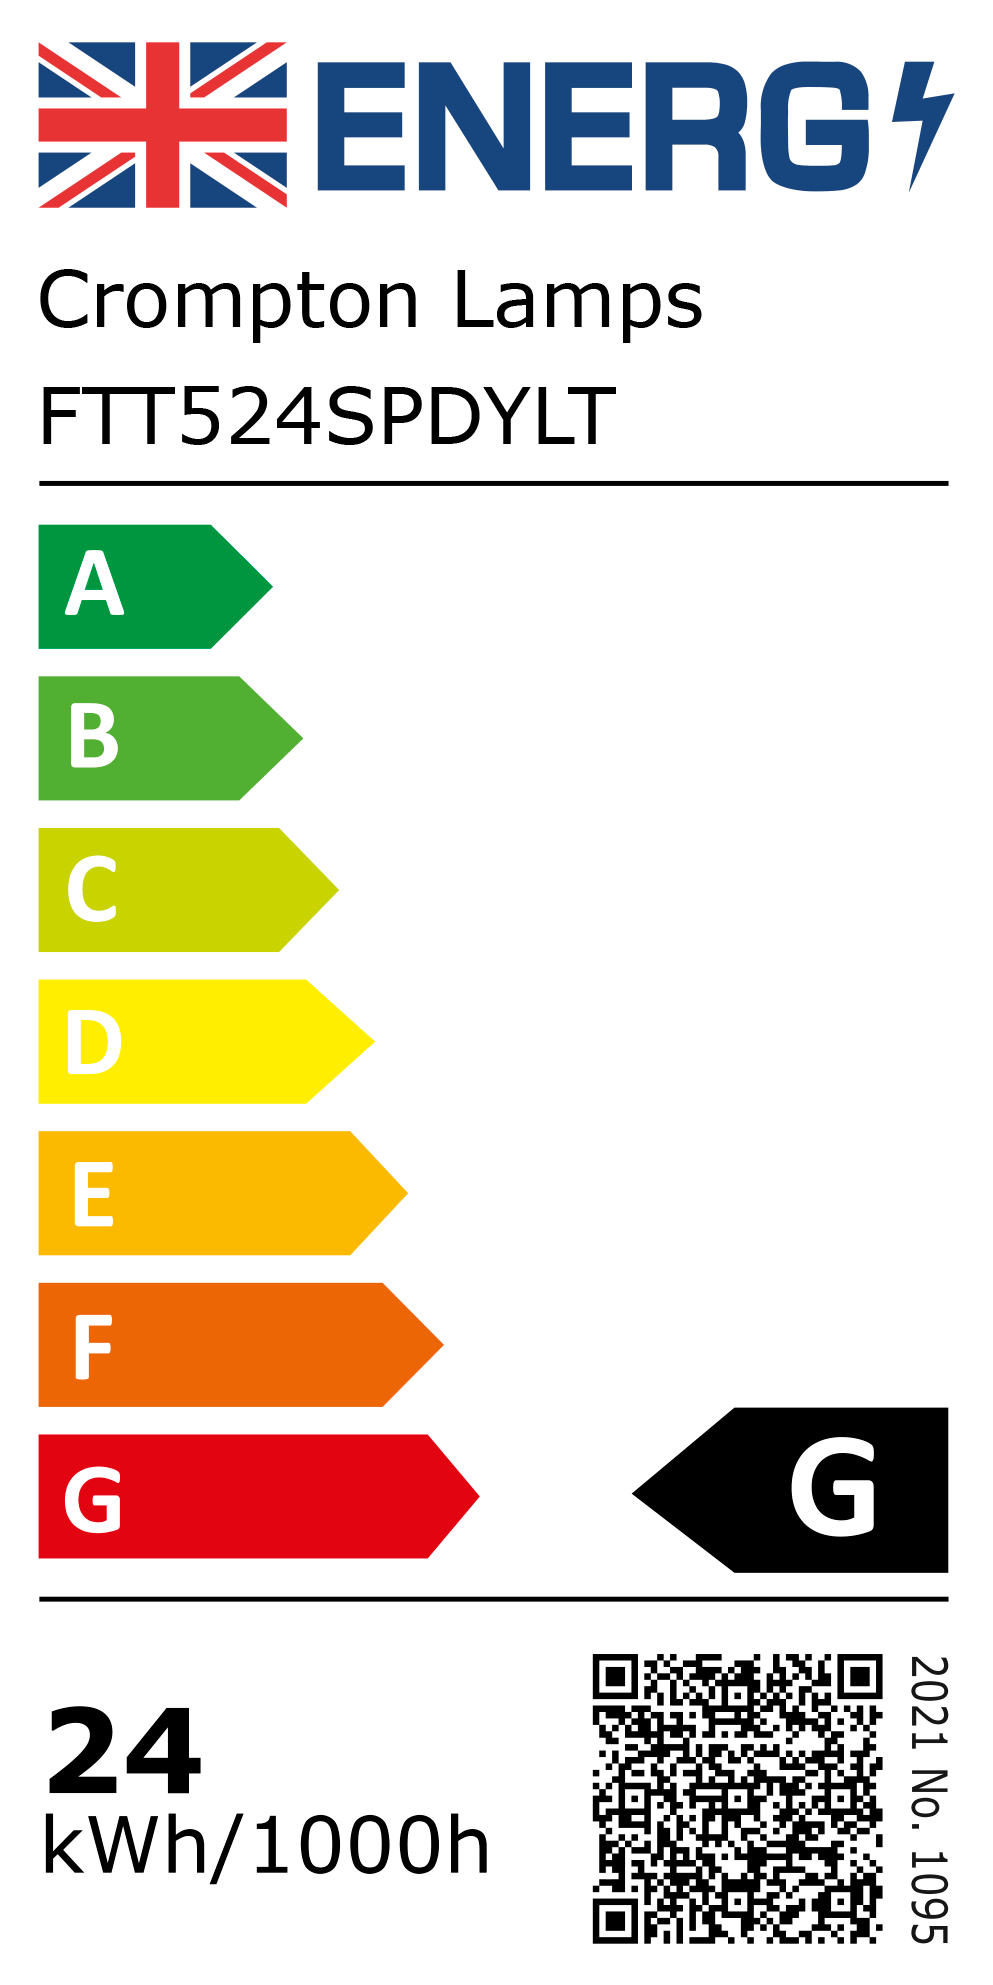 New 2021 Energy Rating Label: Stock Code FTT524SPDYLT